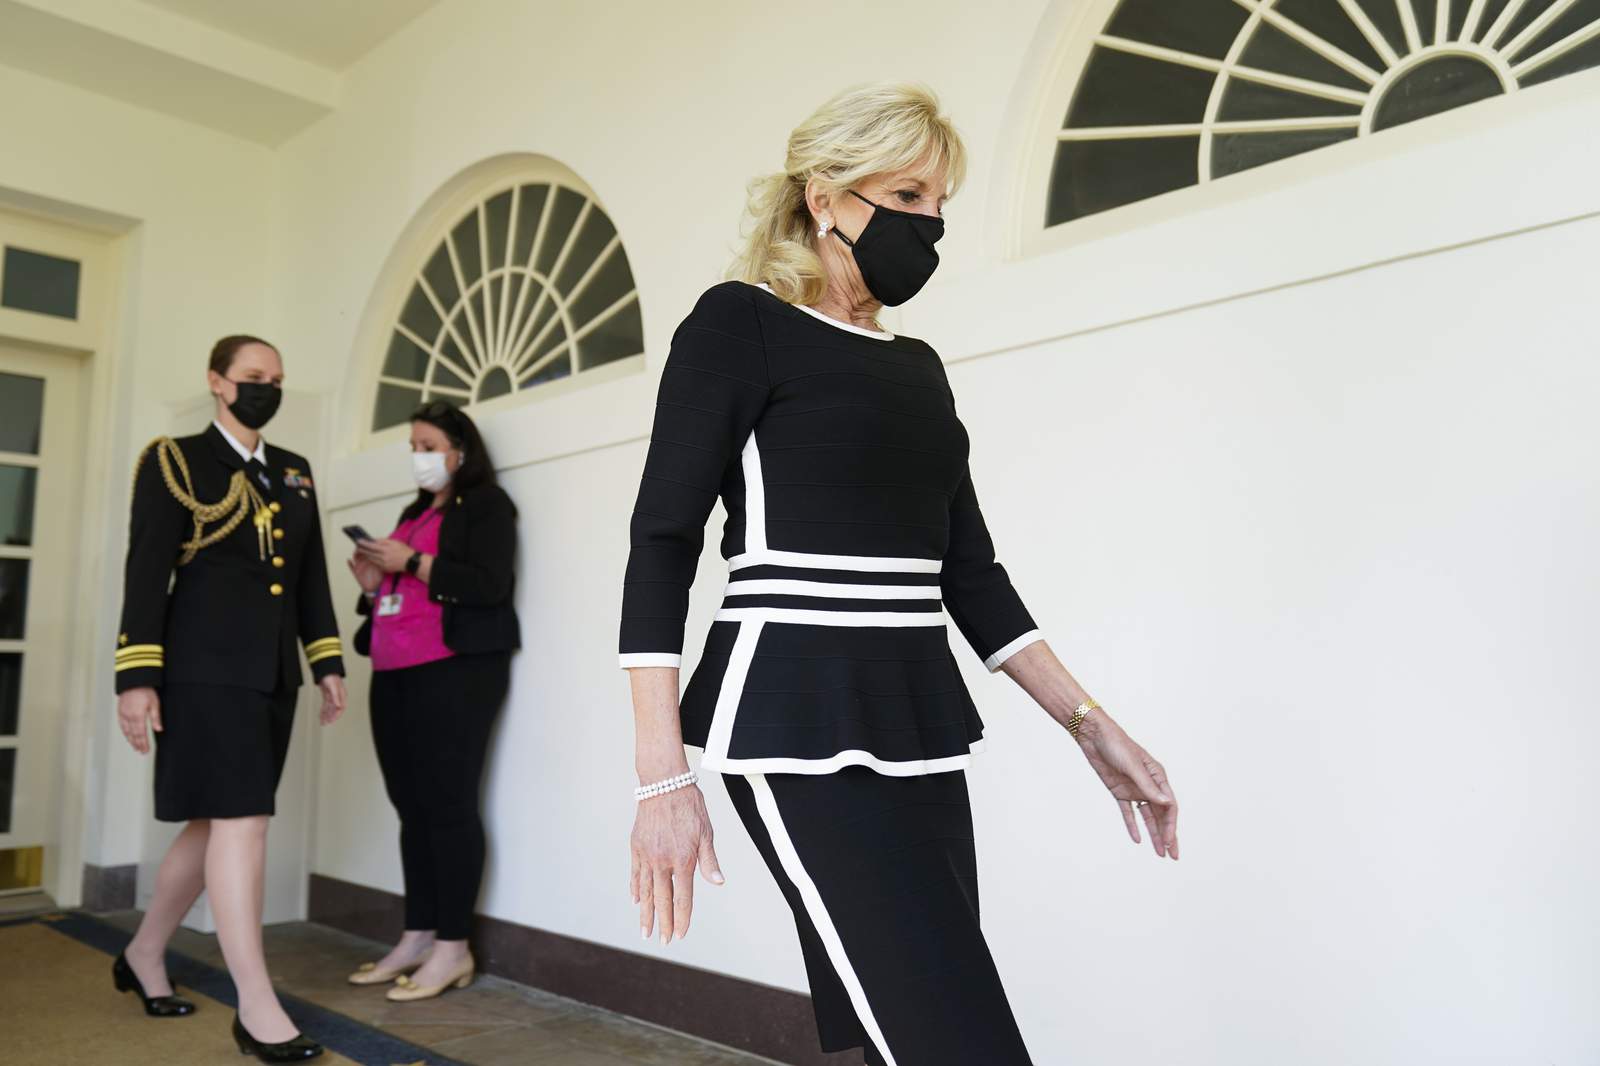 White House: First lady Jill Biden to undergo 'procedure'